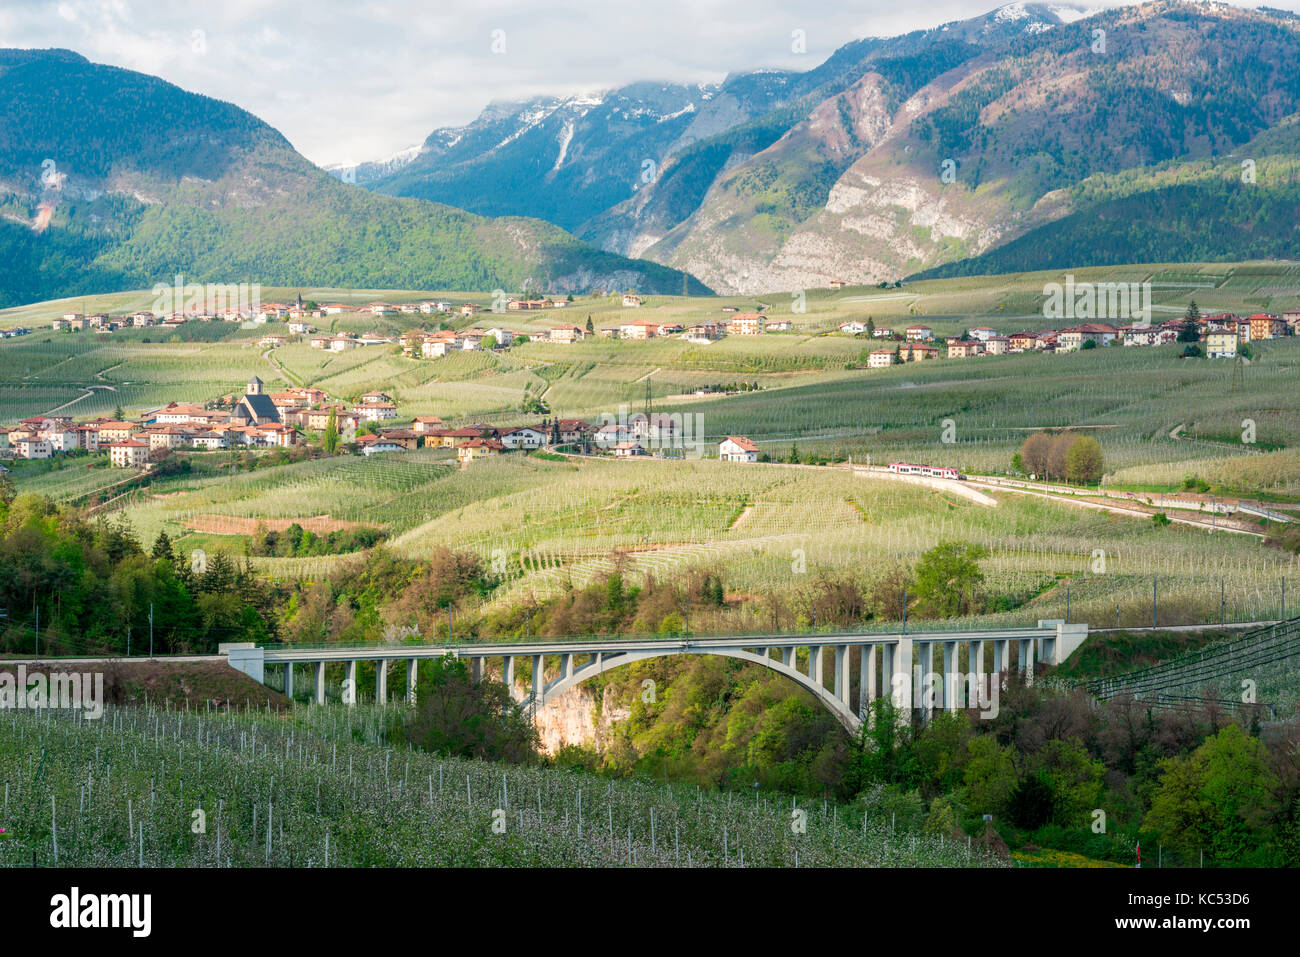 L'italia, trentino alto adige, apple fioritura della valle di non e s. giustina ponte. Foto Stock